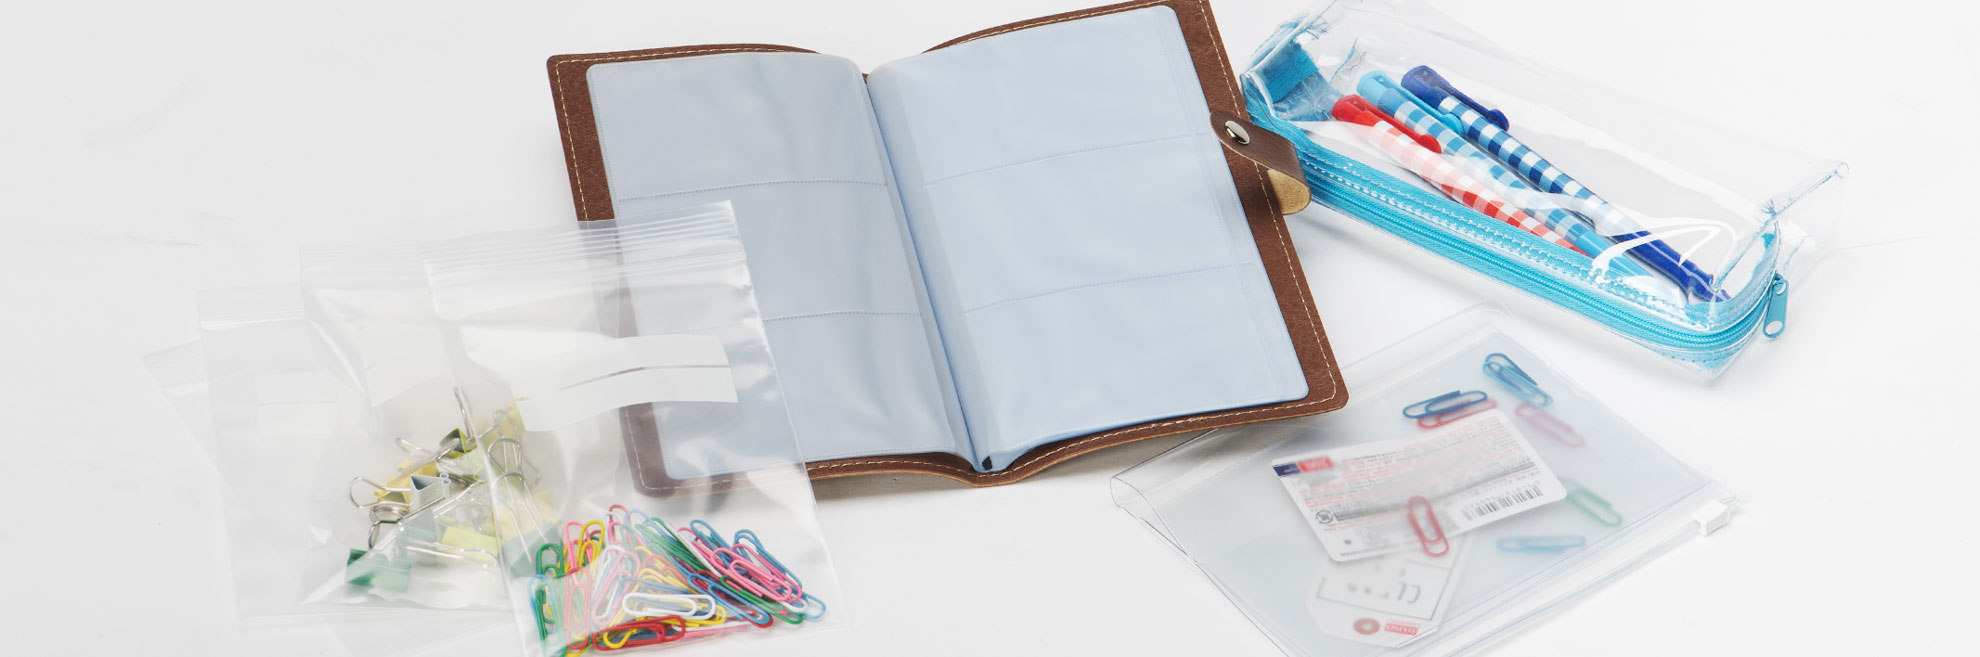 超級透明膠布、厚透明教布耐移行、客製化物性適合加工pvc塑膠夾鏈袋、pvc膠布拉鍊包、筆袋、透明化妝包